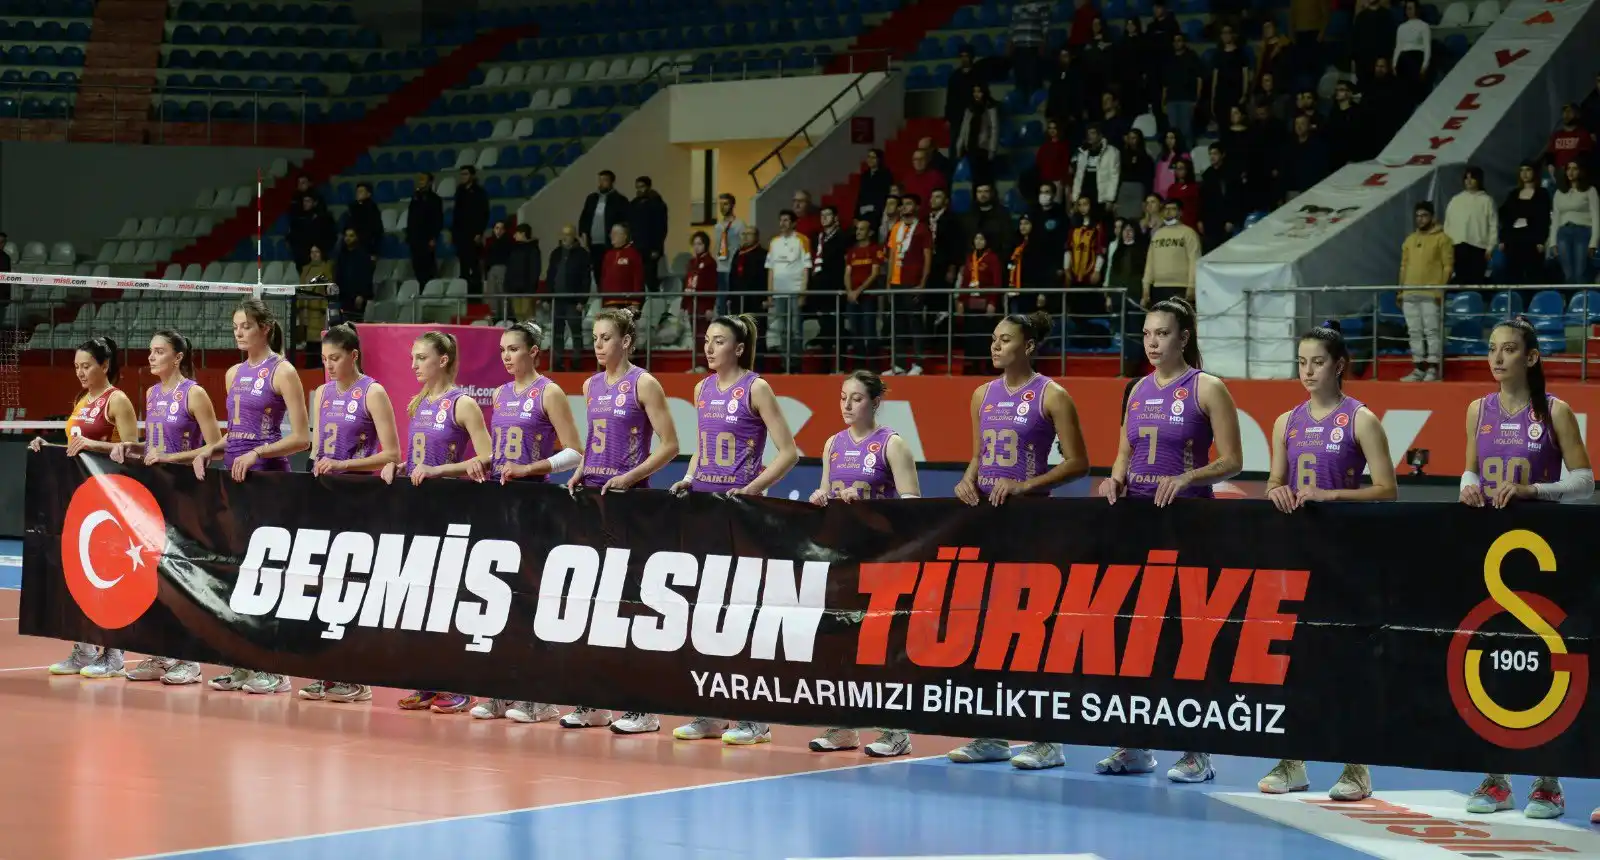 Sultanlar ligi 18. hafta Galatasaray